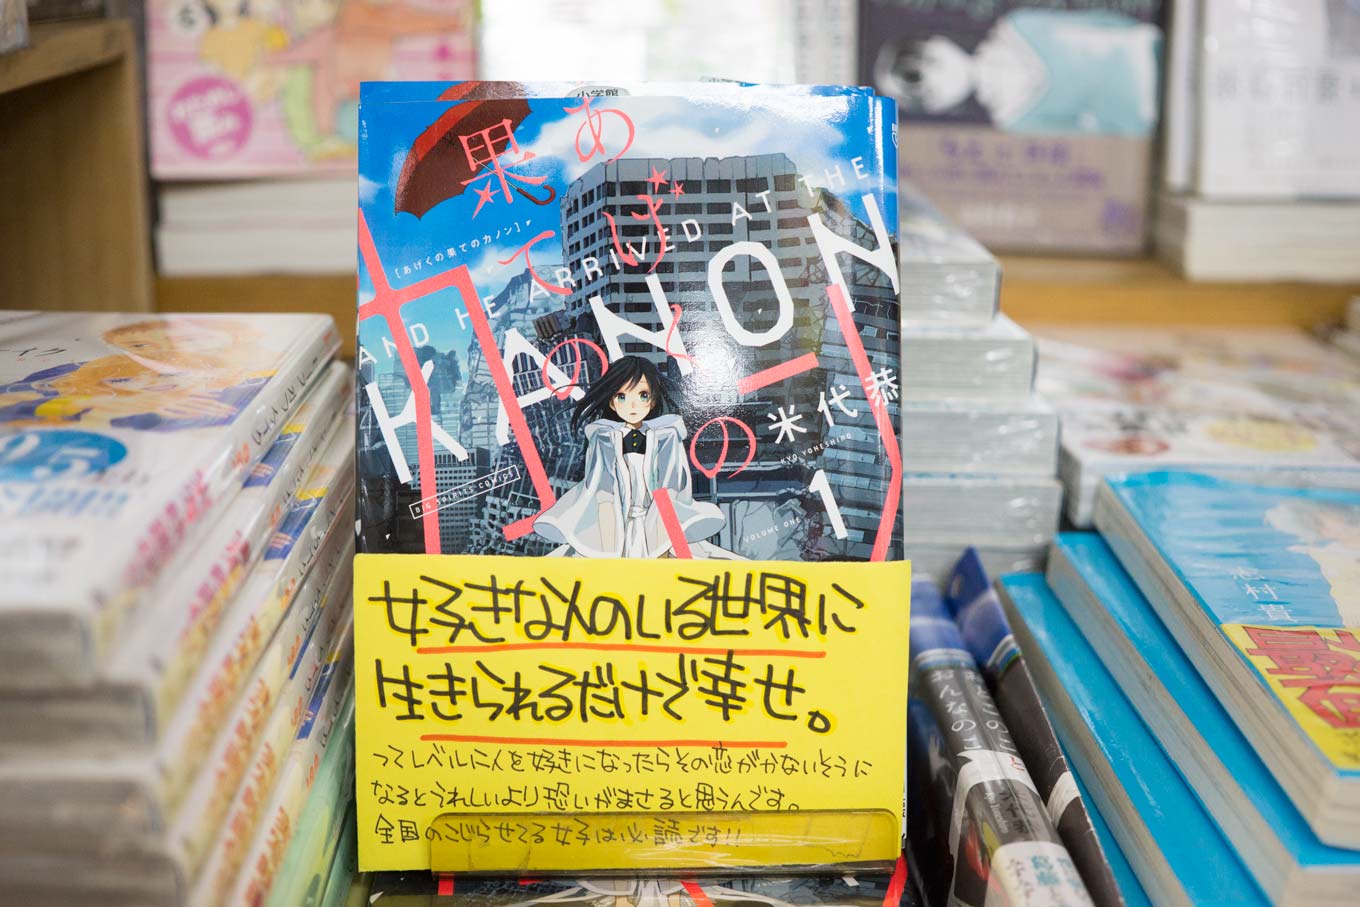 次に読む本 が見つかる本屋 ヴィレッジヴァンガード下北沢店 中澤さんのおすすめ作品 新しい おもしろい漫画家見つけた Yomina Hare